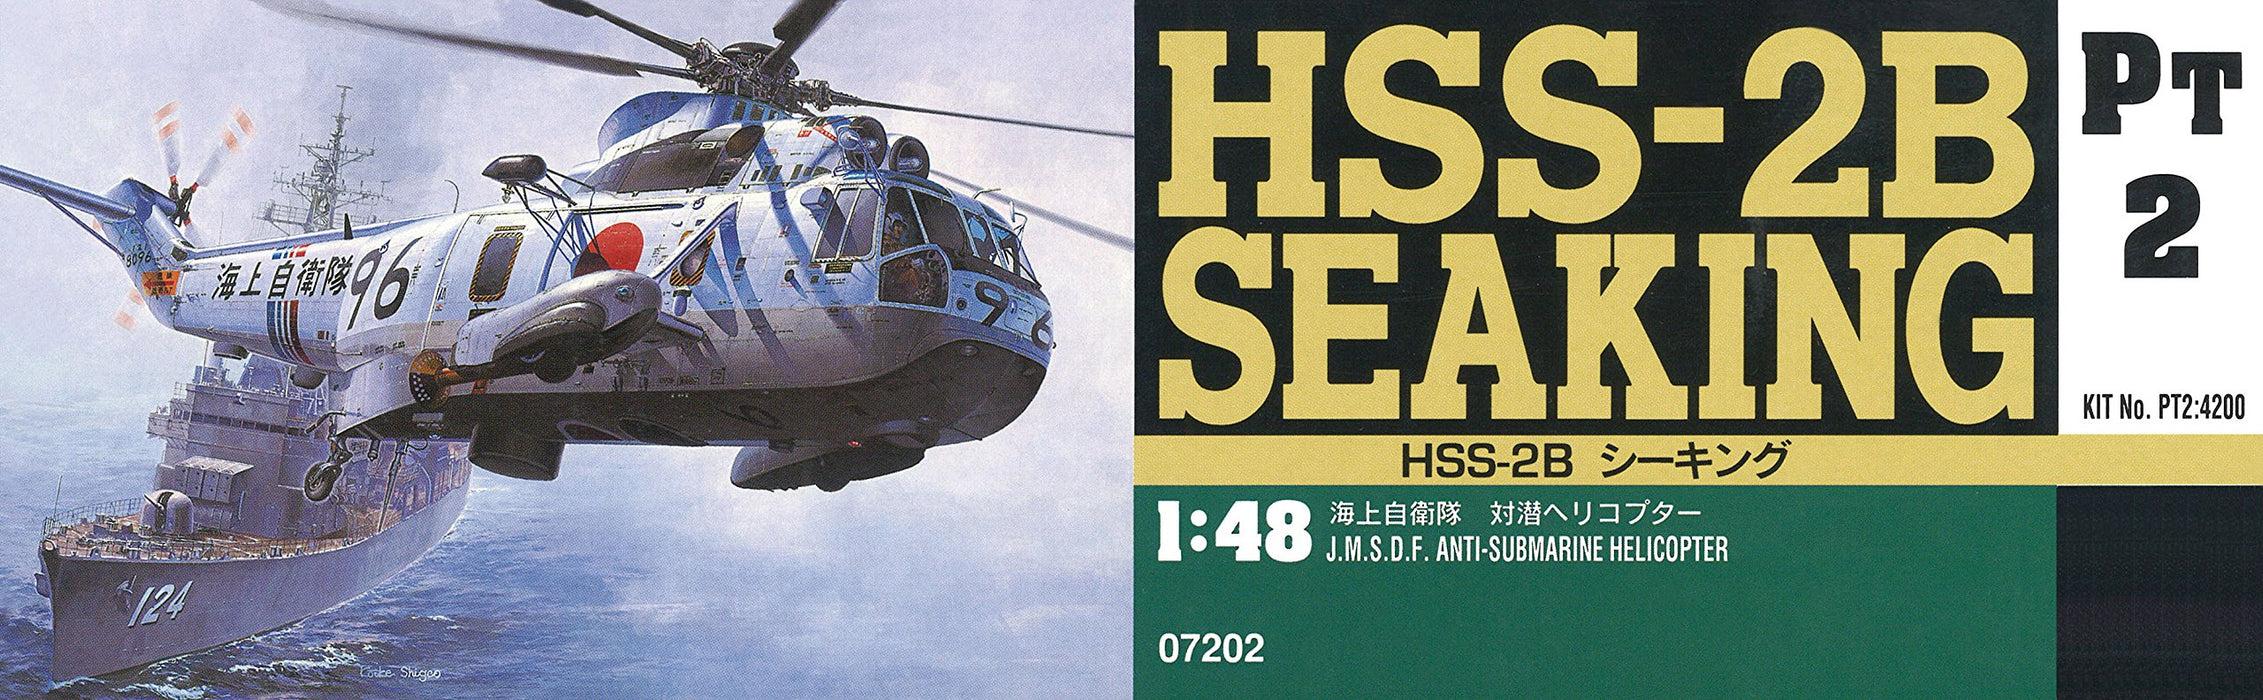 HASEGAWA  1/48 J.M.S.D.F. Hss-2B Seaking Plastic Model